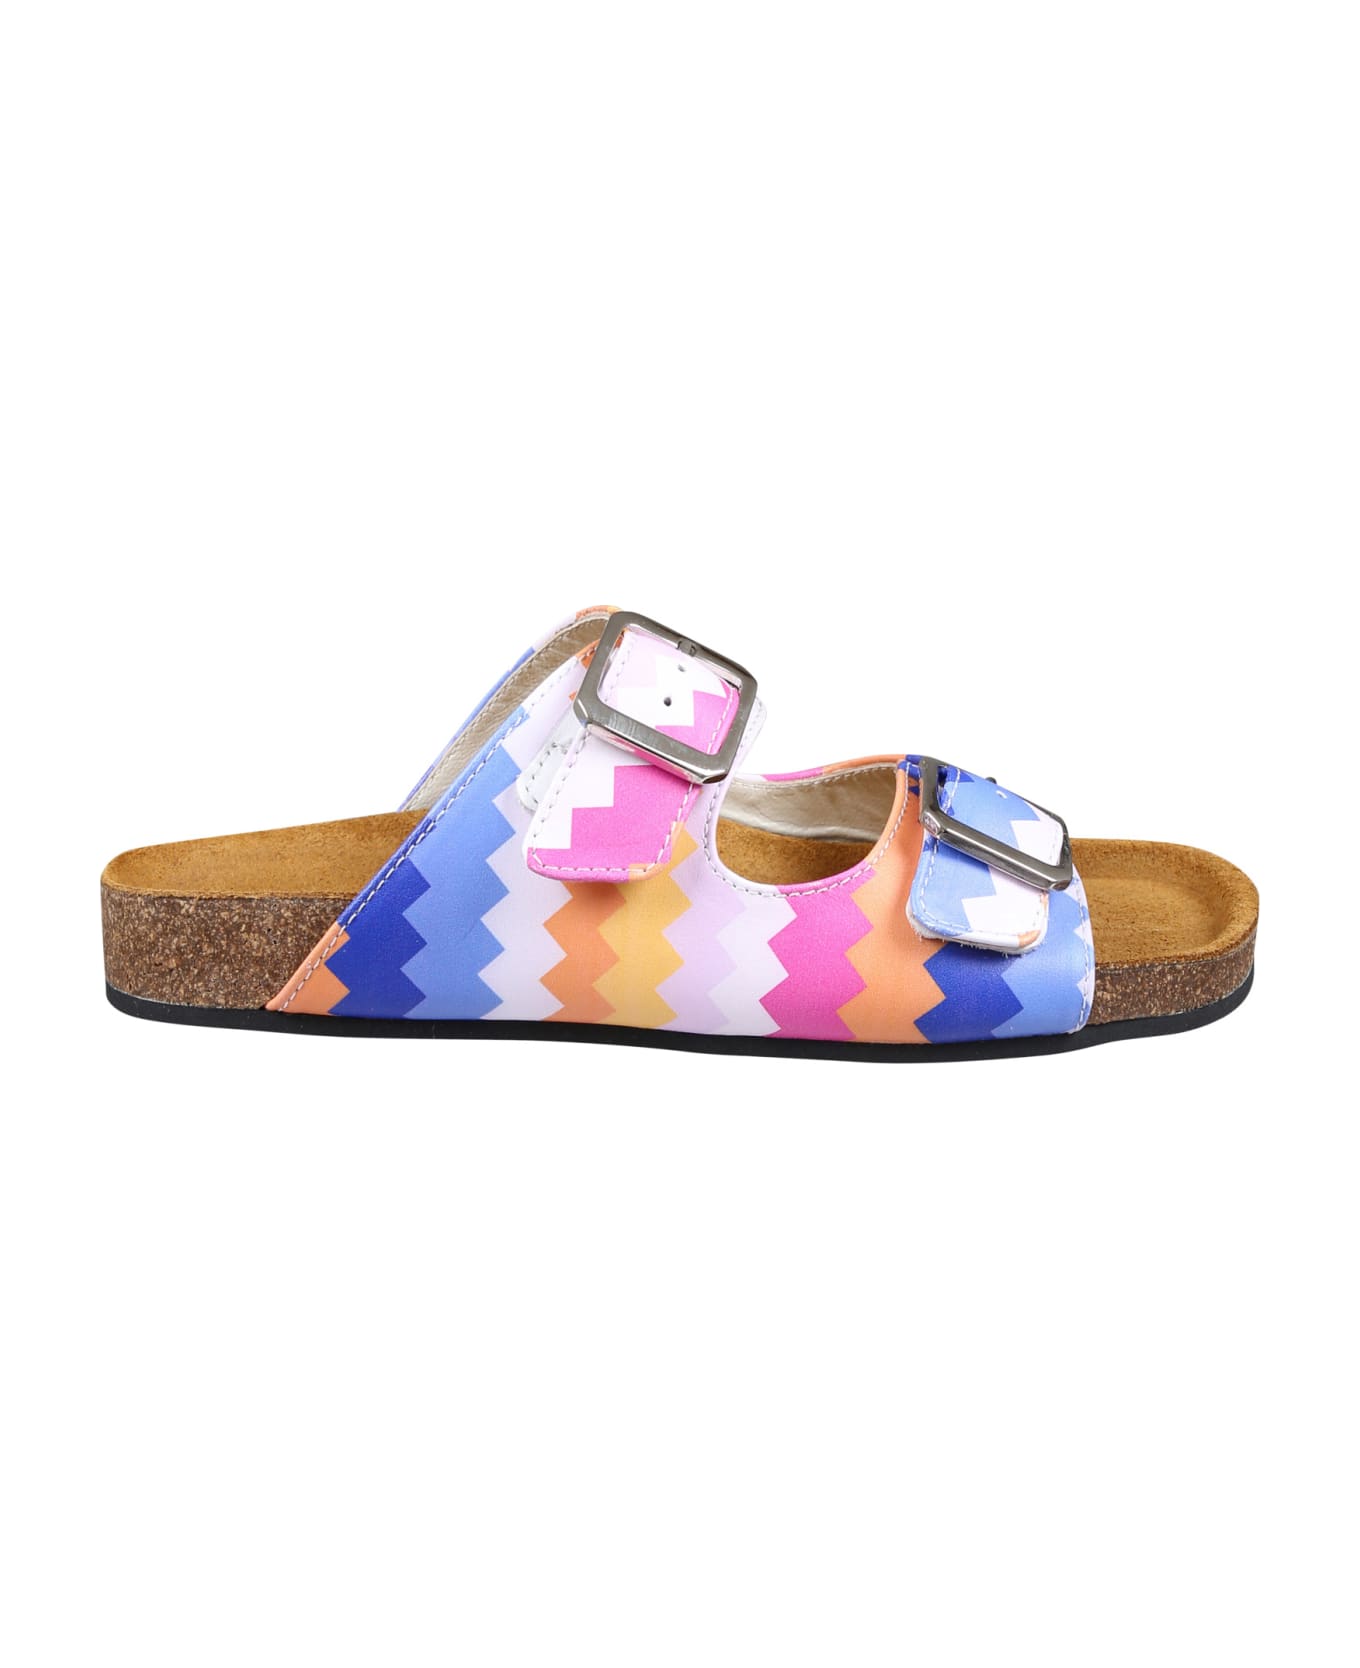 Missoni Multicolor Sandals For Girl - Multicolor シューズ